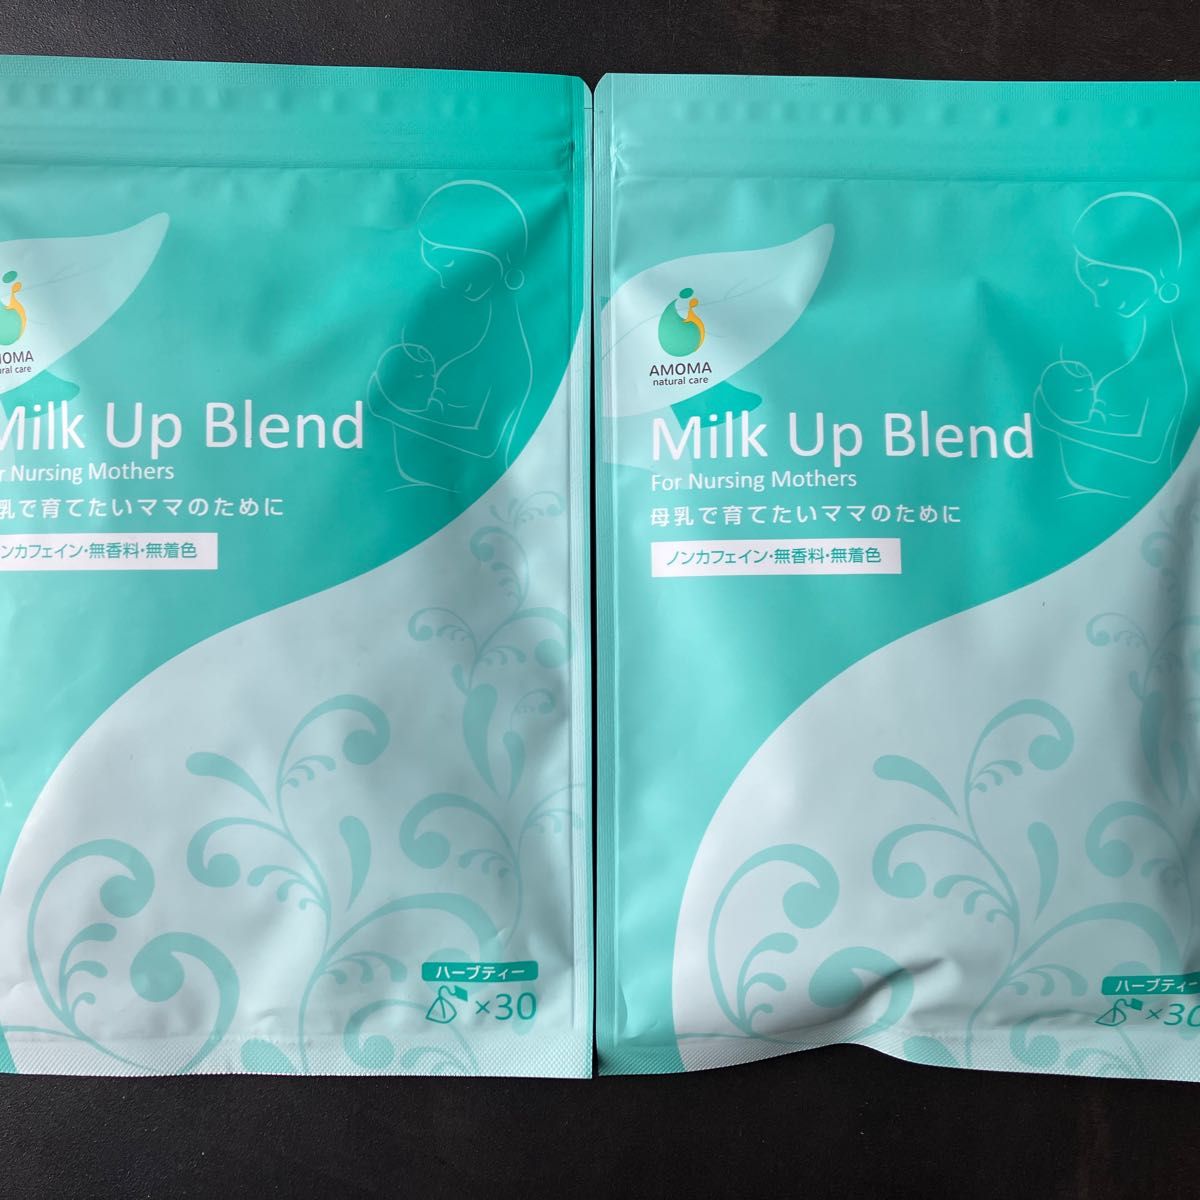 AMOMAナチュラルケア AMOMAミルクアップブレンド 2個セット - 健康用品